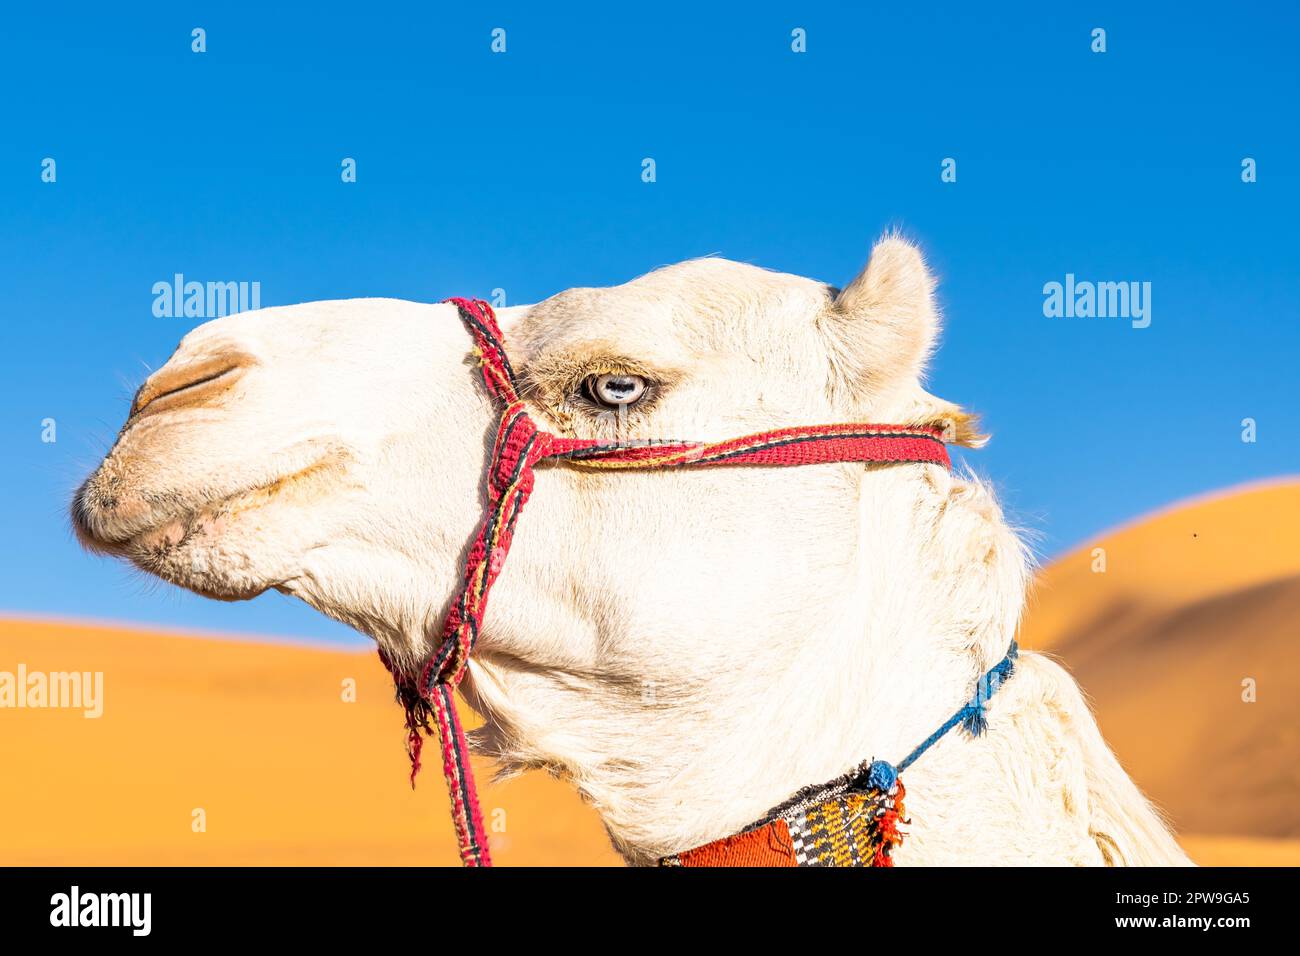 Blauäugiges, weißes Dromedar-Kamel. Seitliches Kopffoto in einem niedrigen Blickwinkel auf die Sahara-Wüste Taghit, Algerien, mit einem verschwommenen orangefarbenen CO Stockfoto